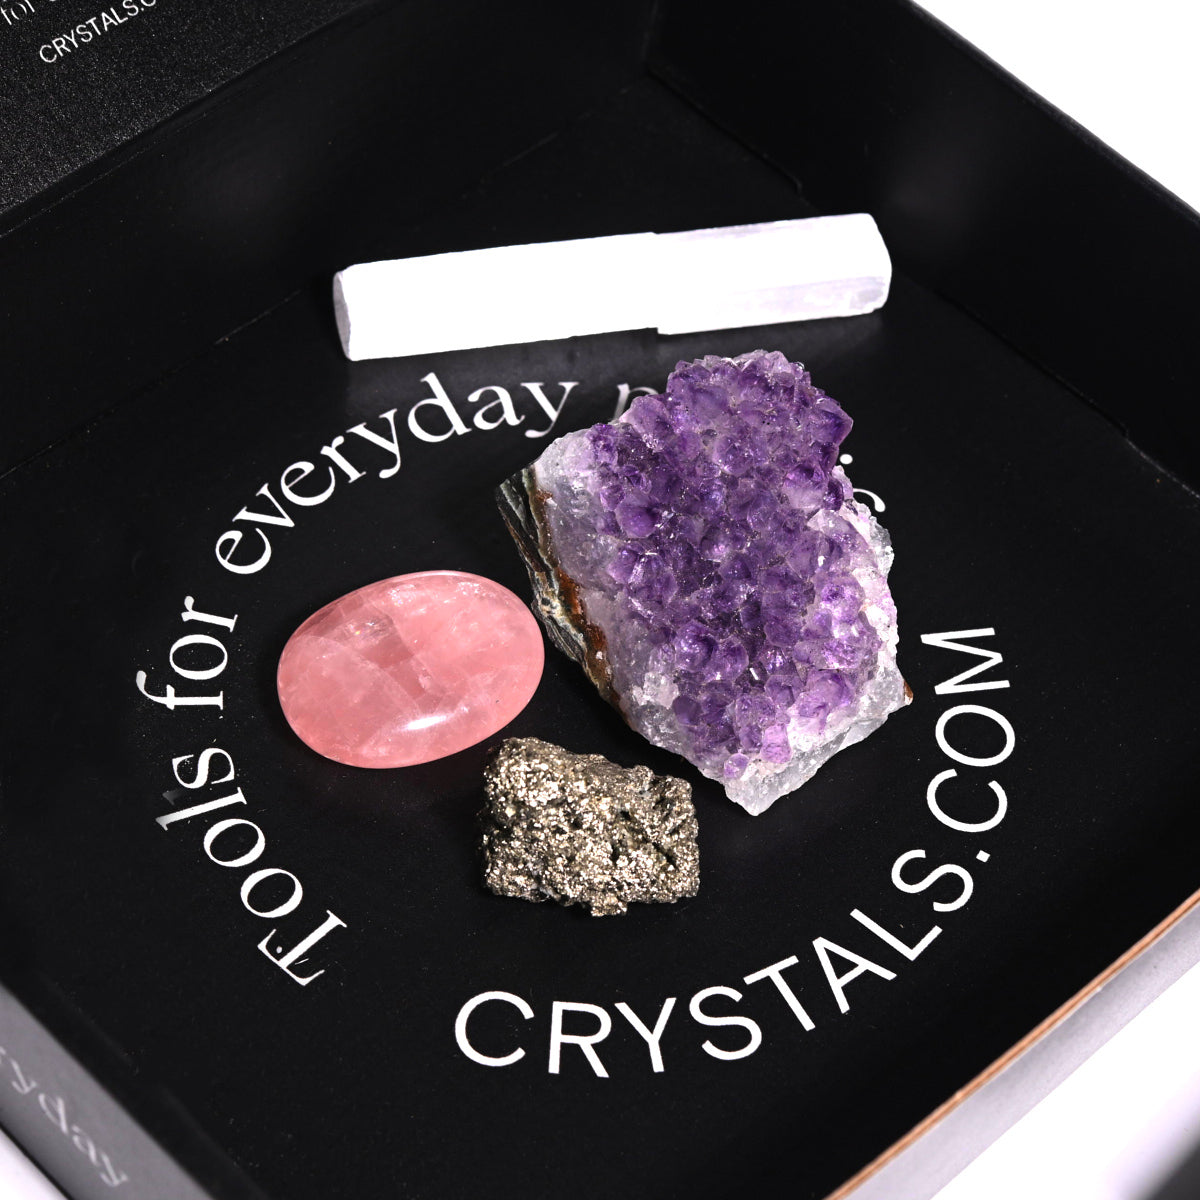 crystals.com essentials